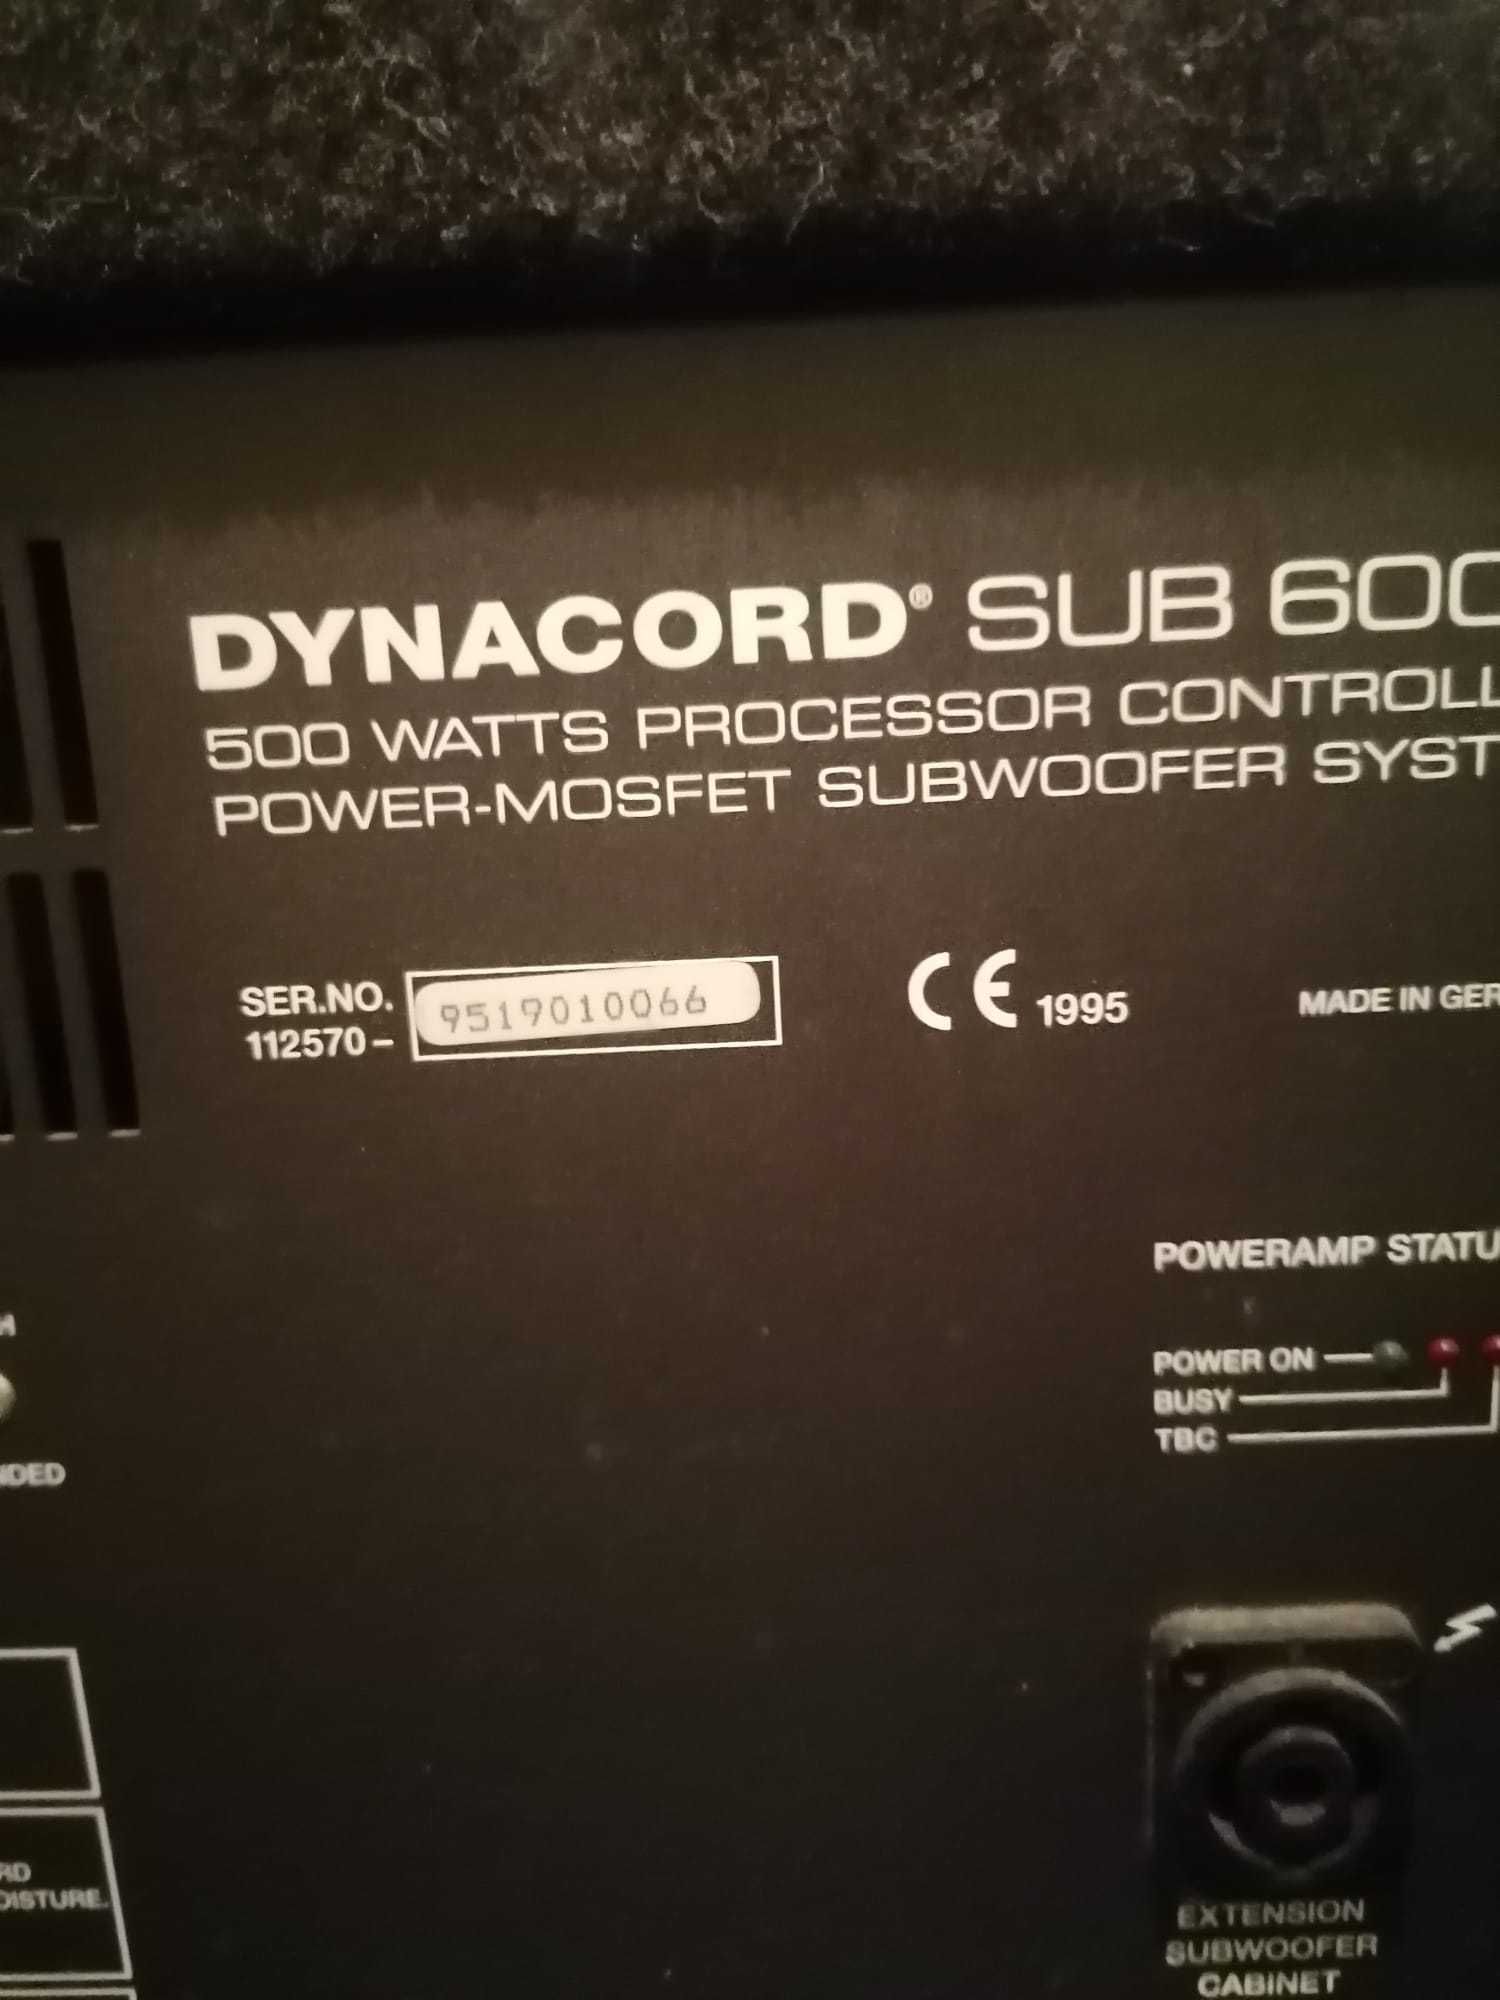 Sub bass 600 dynacord